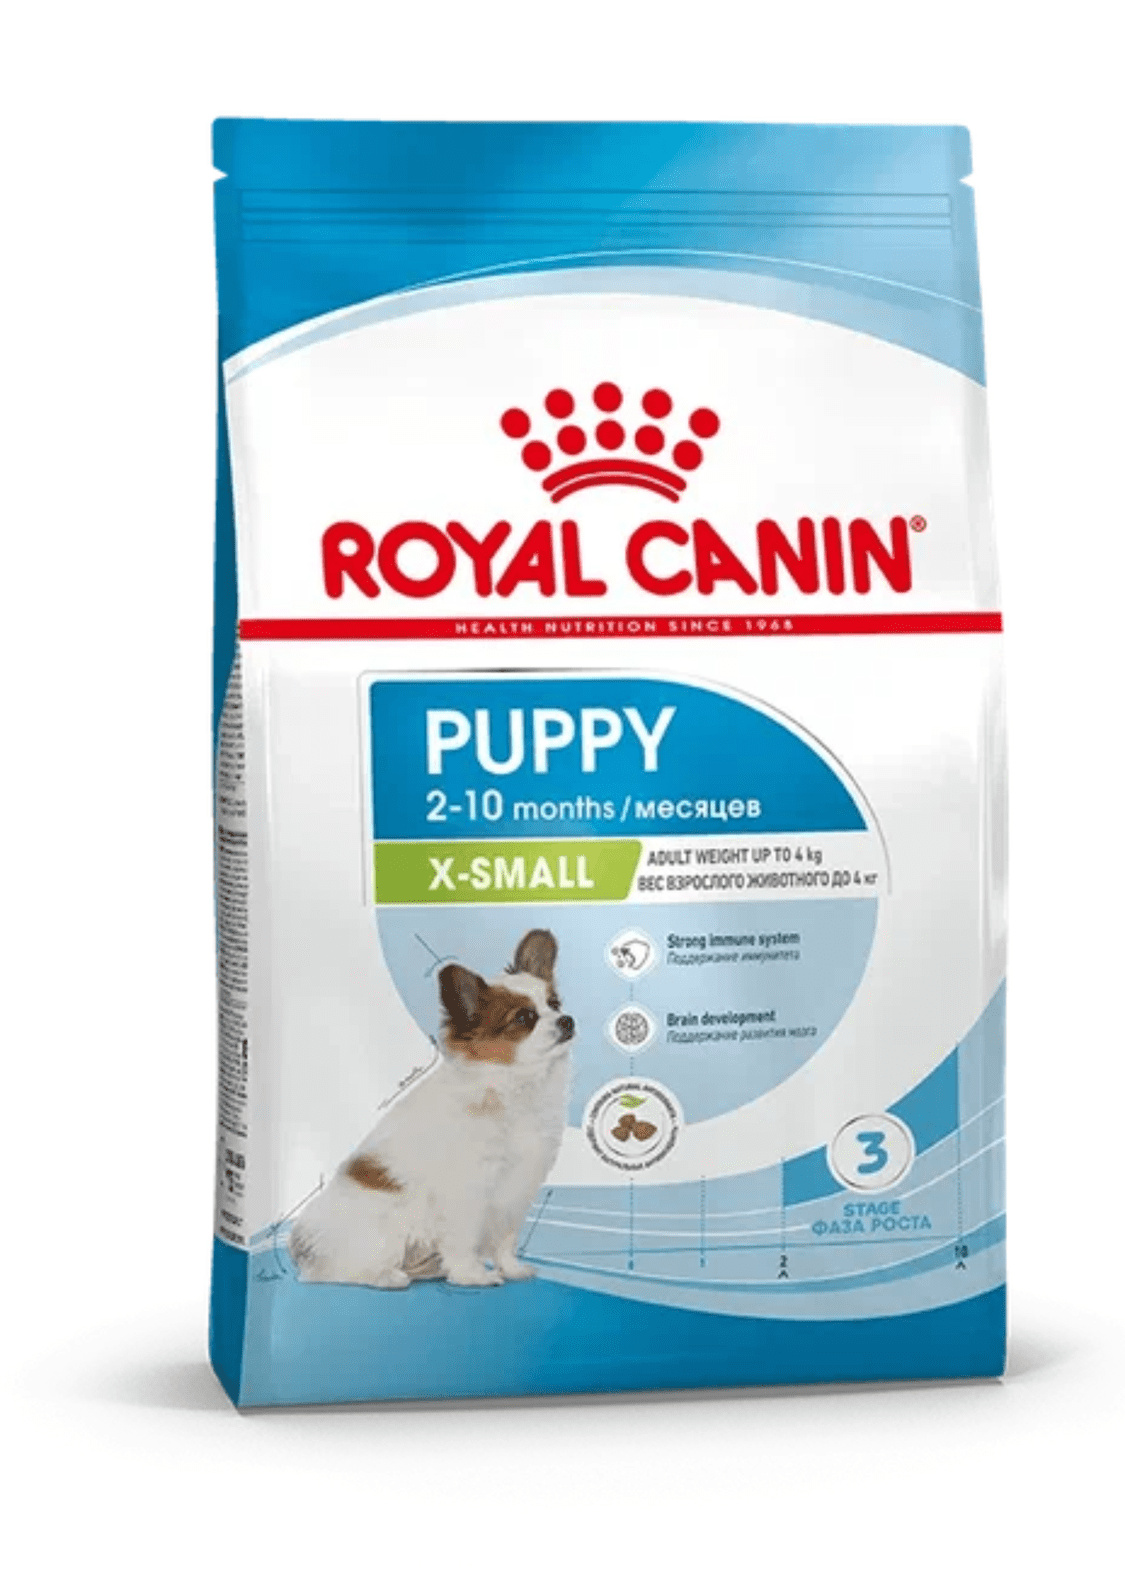 Royal Canin Корм Royal Canin корм сухой для щенков очень мелких размеров до 10 месяцев (1,5 кг) цена и фото